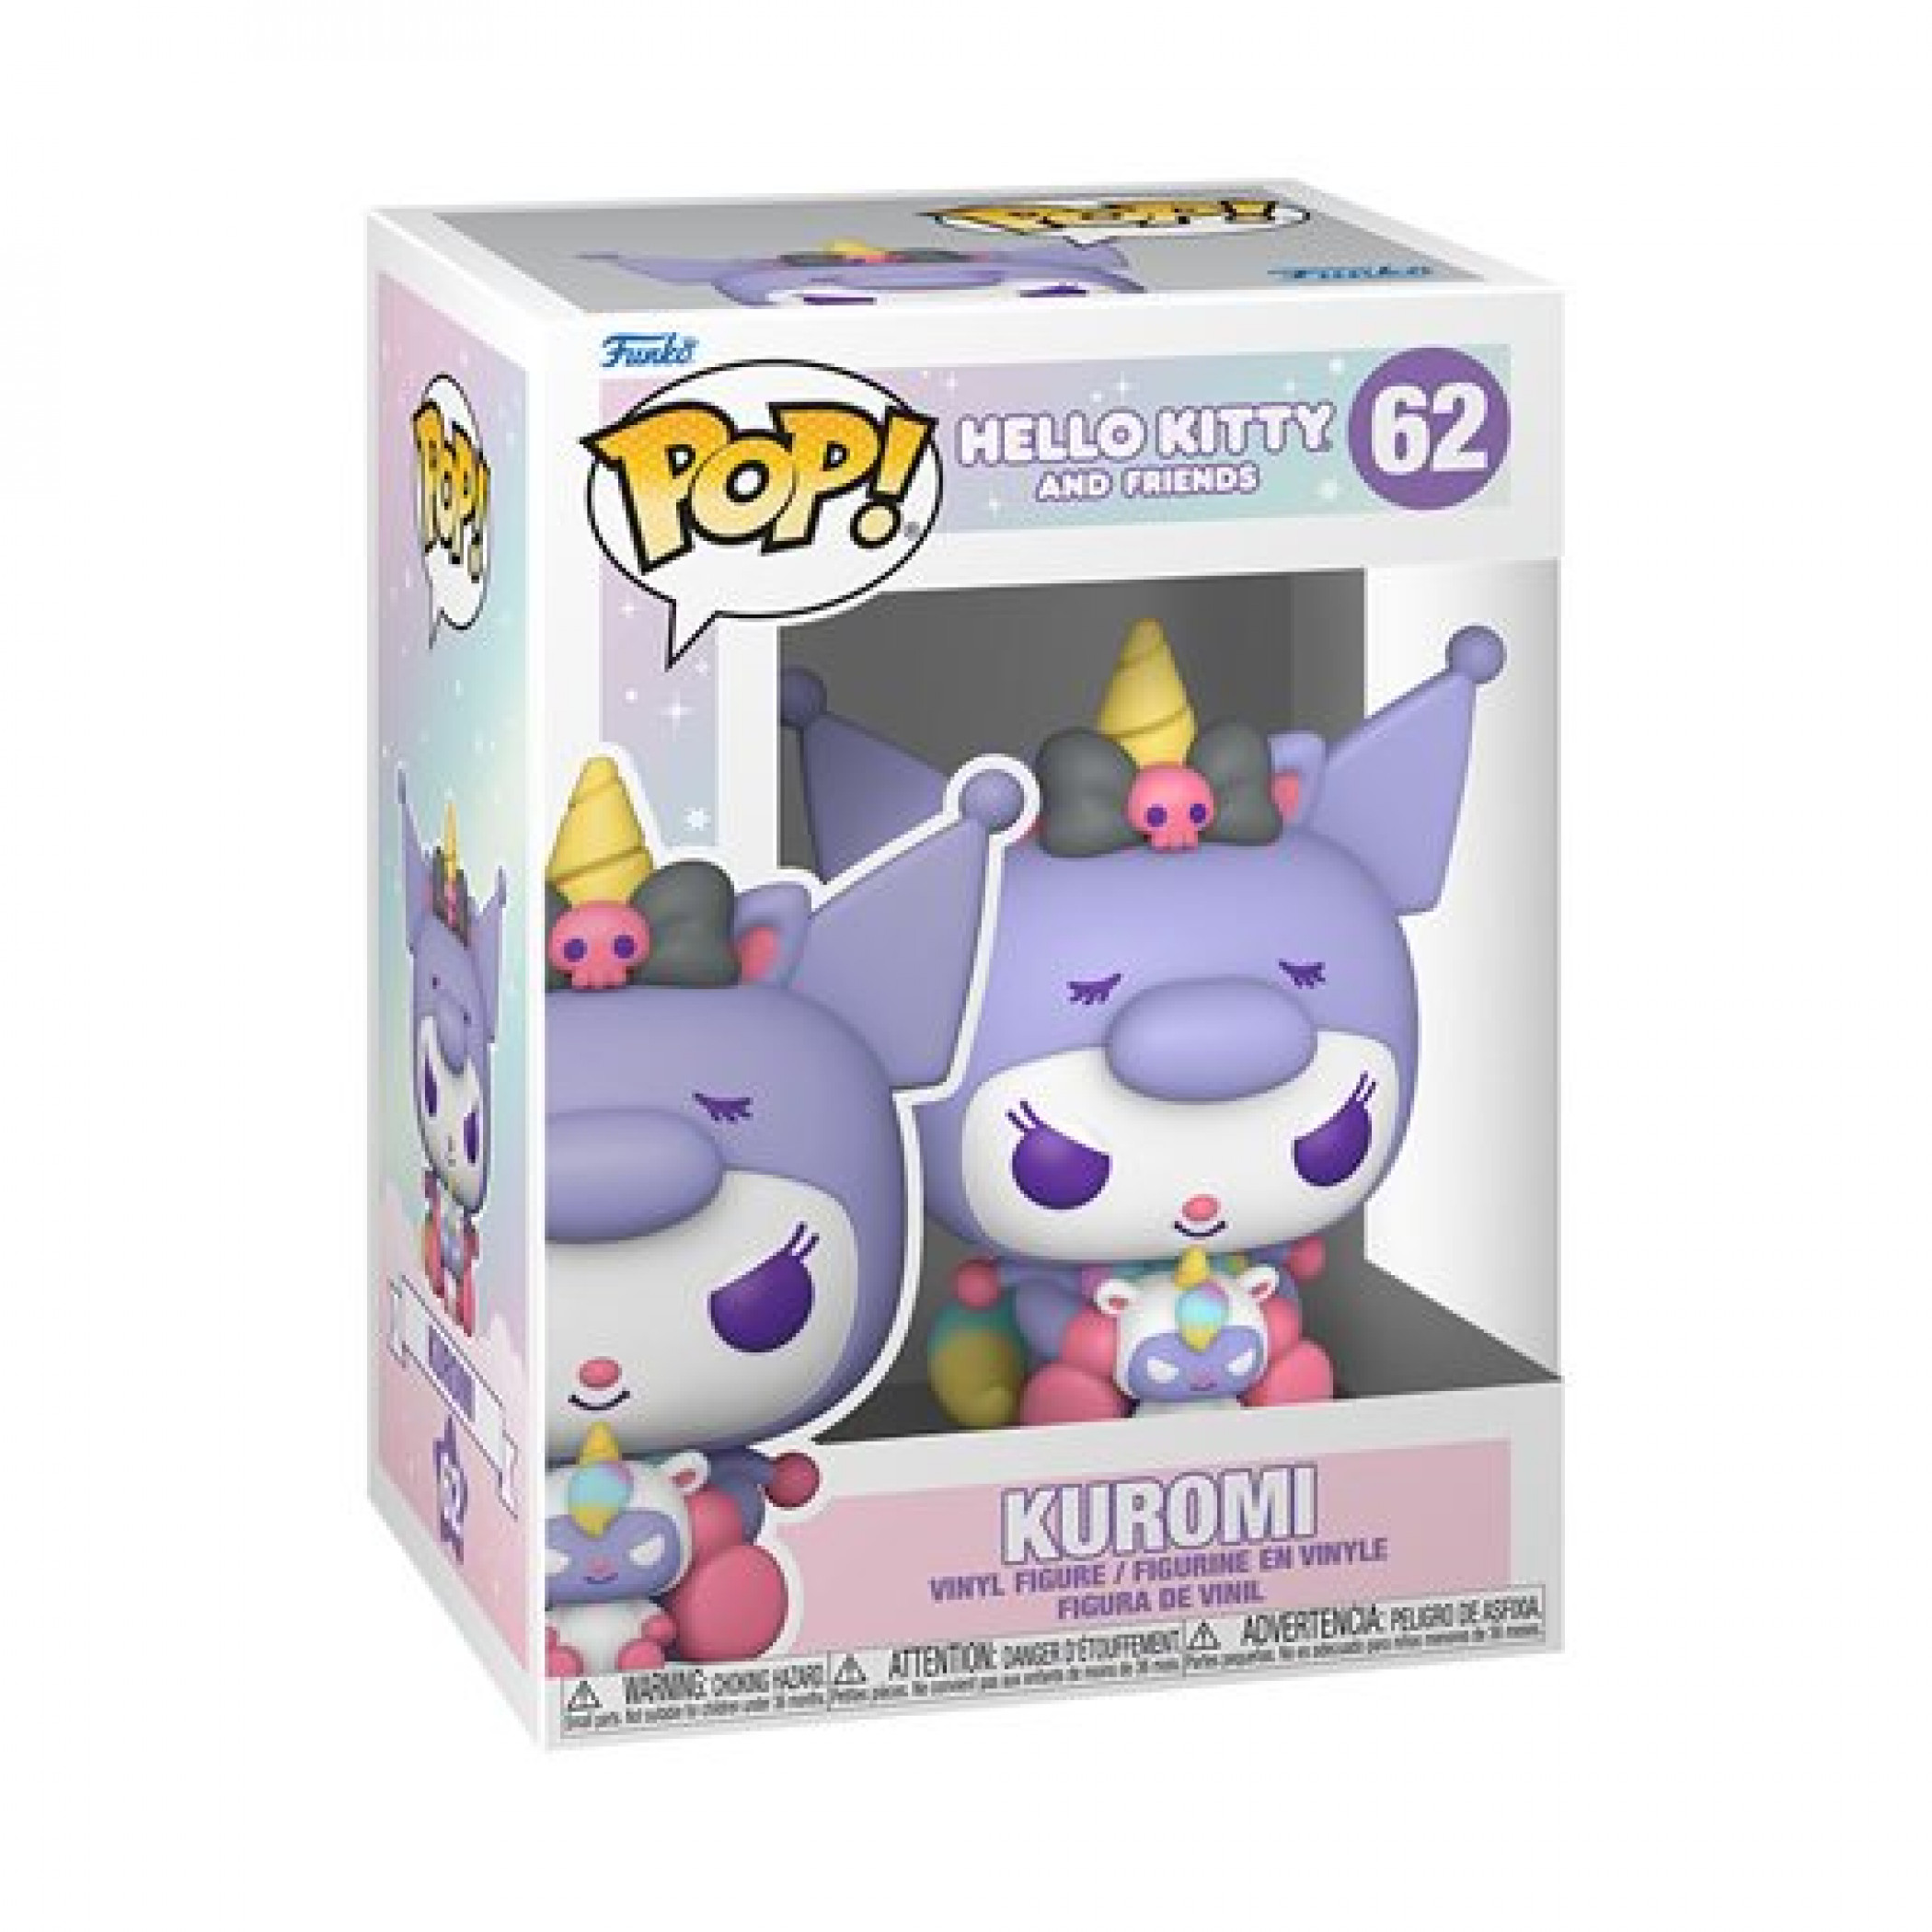 Hello Kitty and Friends Kuromi Funko Pop! Vinyl Figure